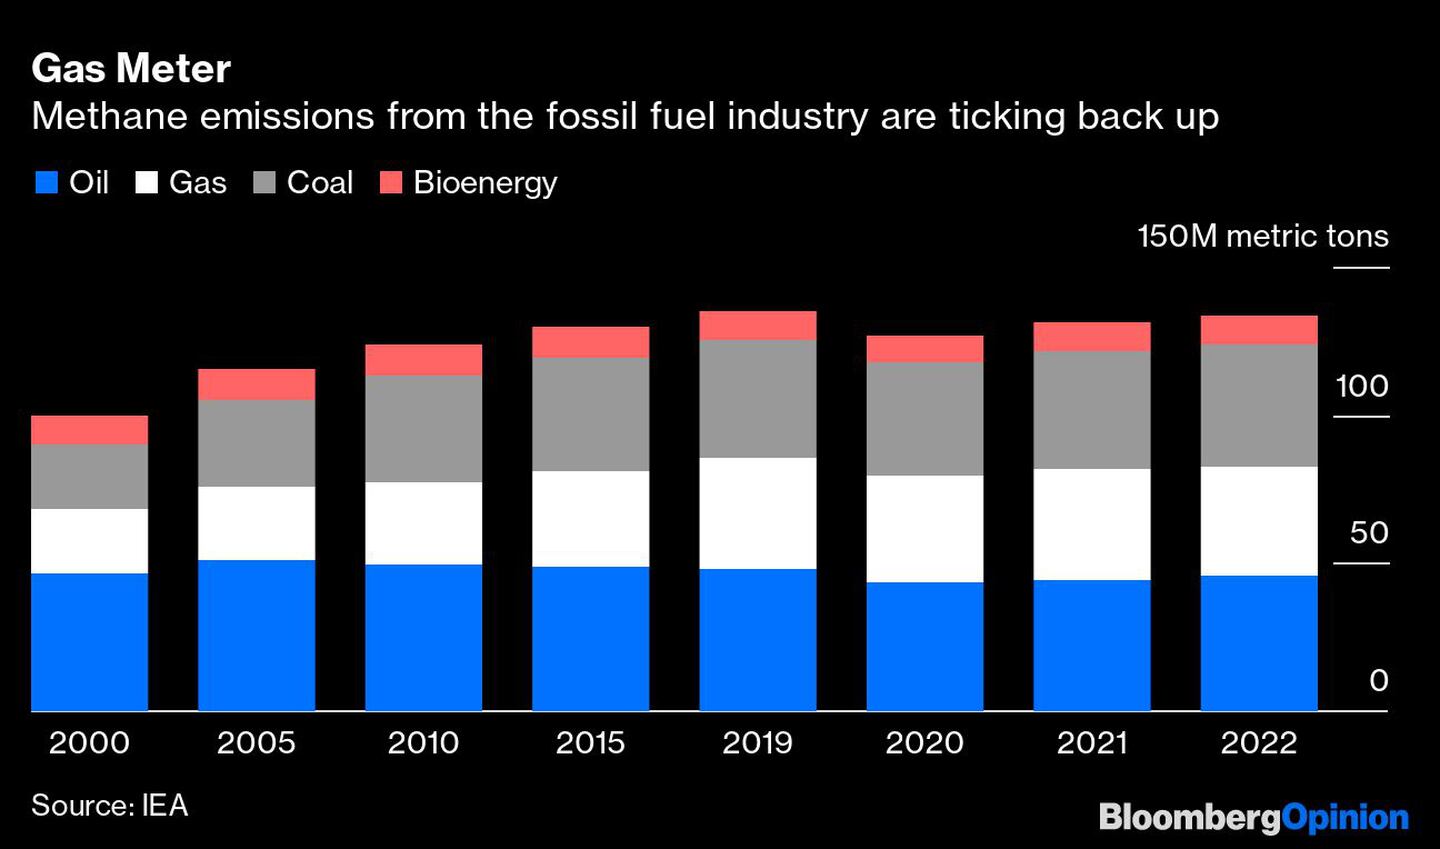 Las emisiones de metano de la industria de combustibles fósiles vuelven a subirdfd